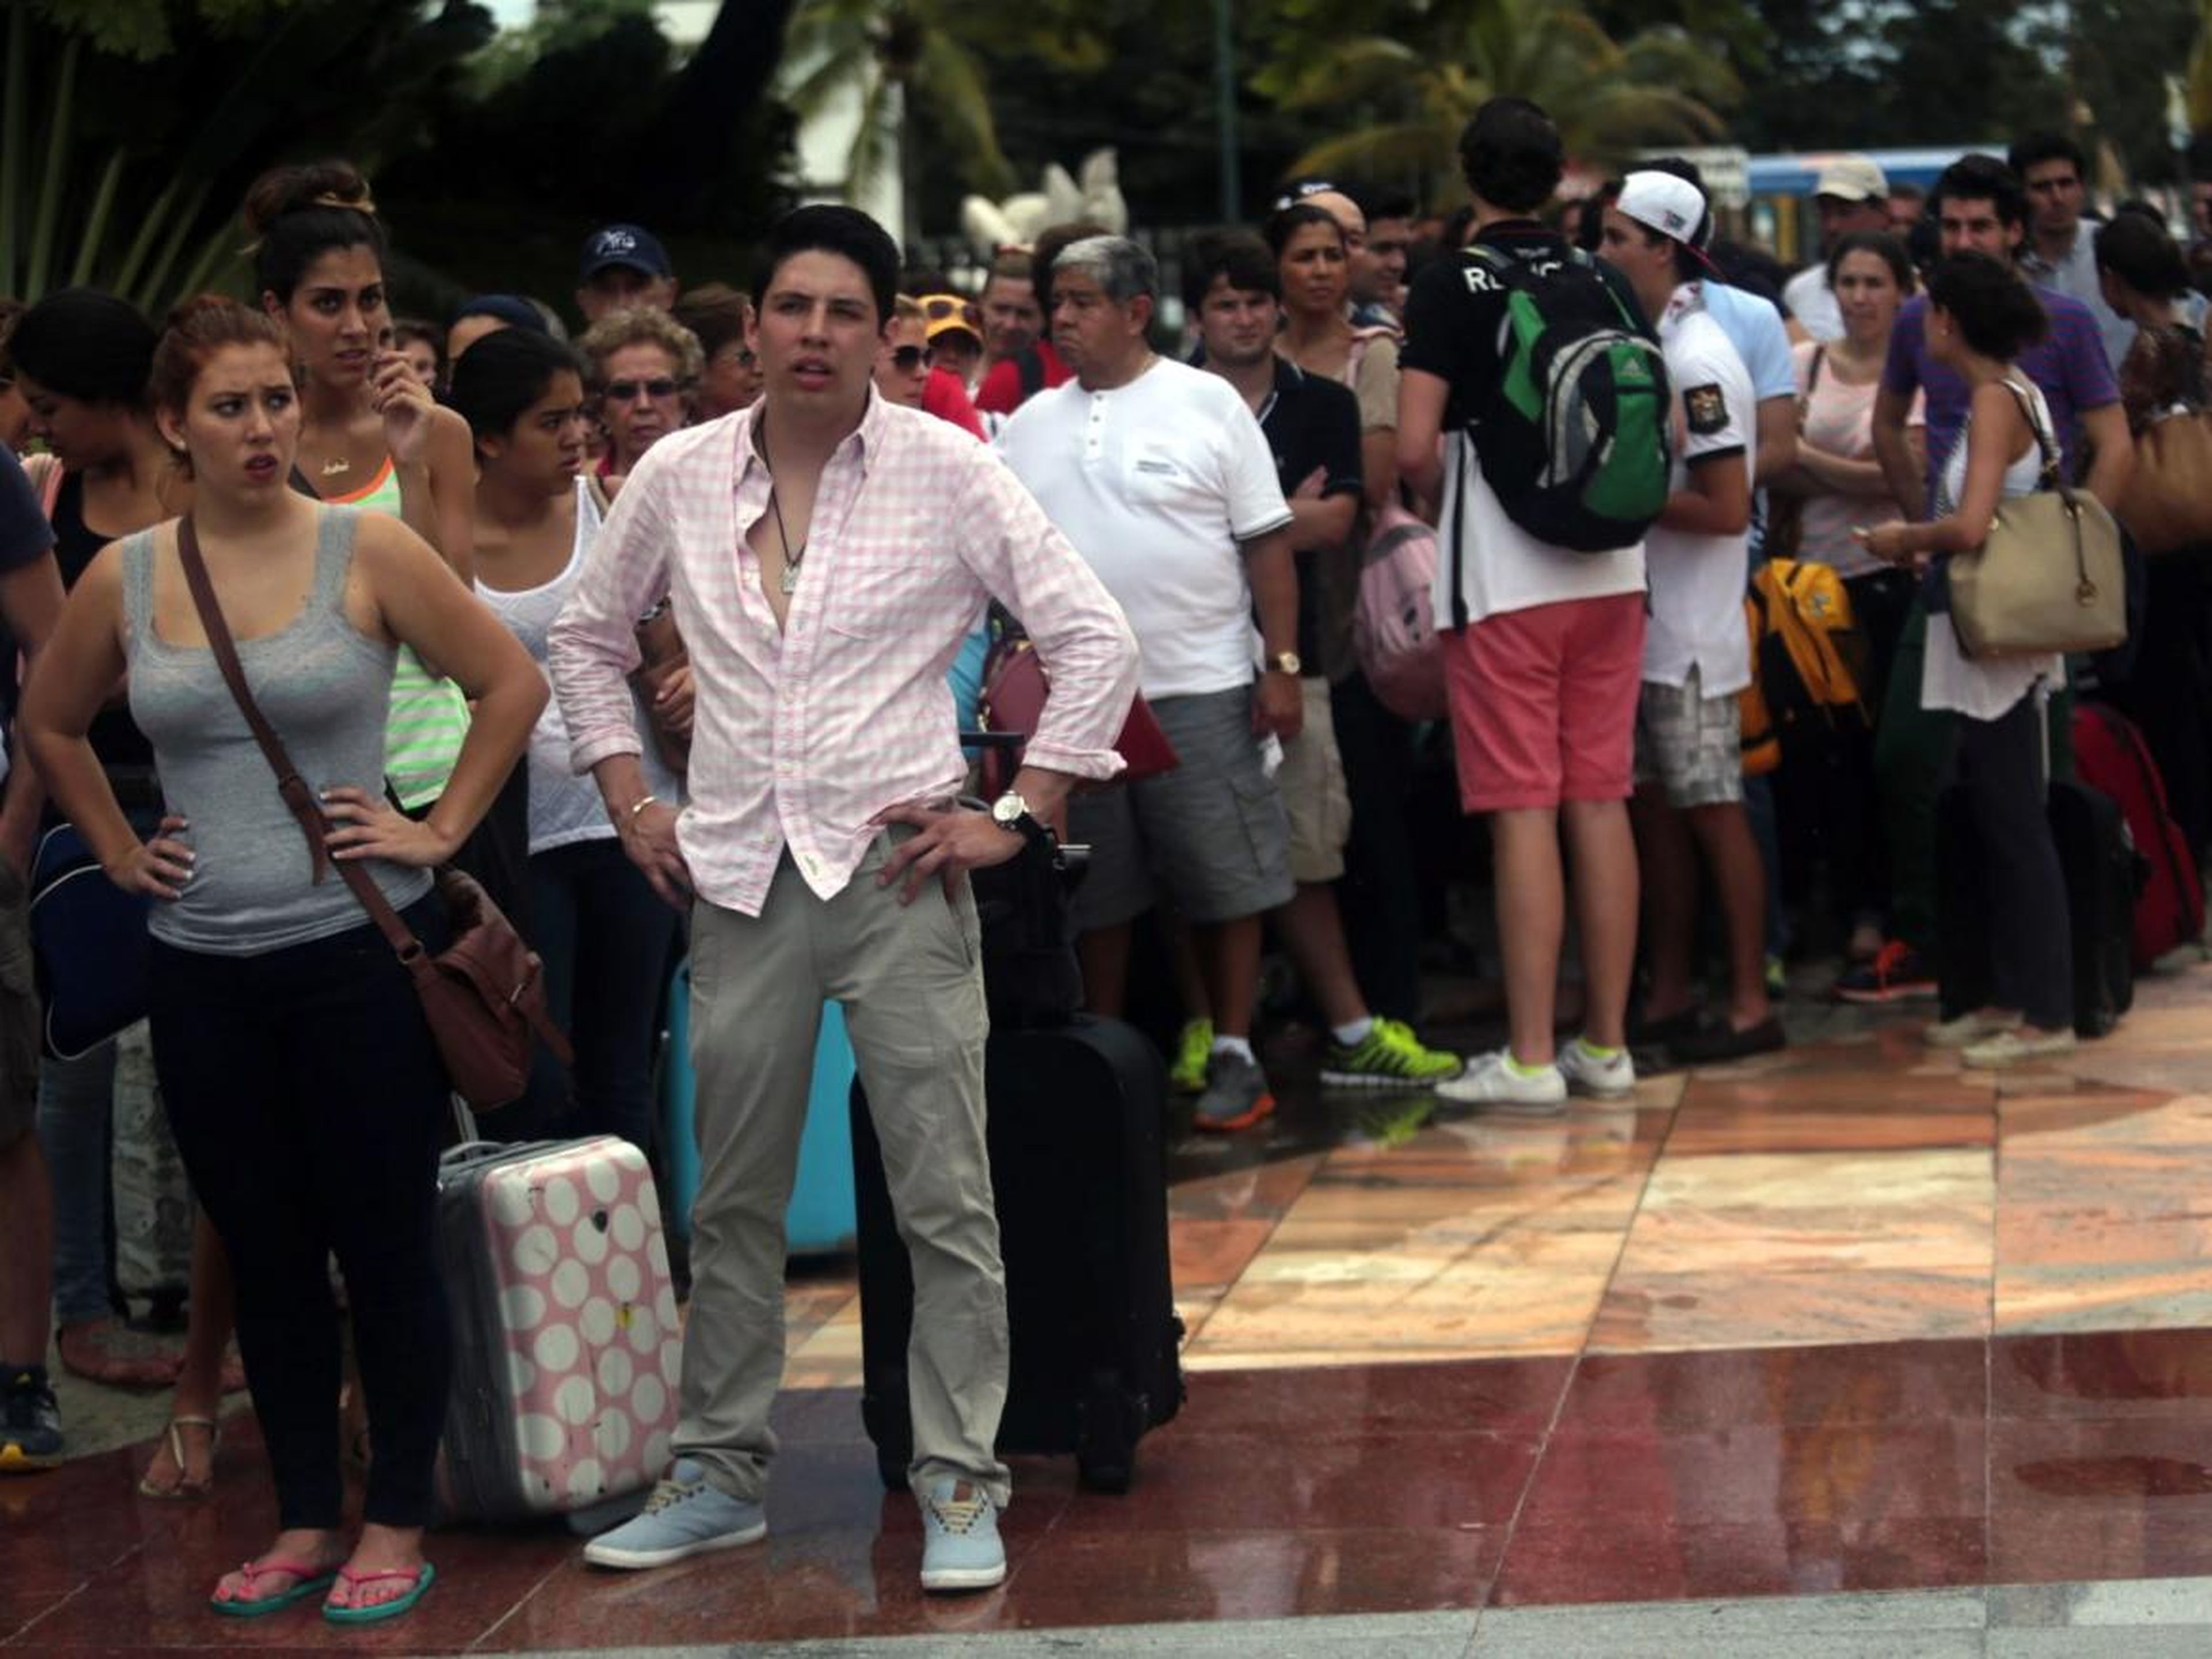 Turistas esperan en fila para salir de Acapulco, México, después de las inundaciones tras las tormentas tropicales.